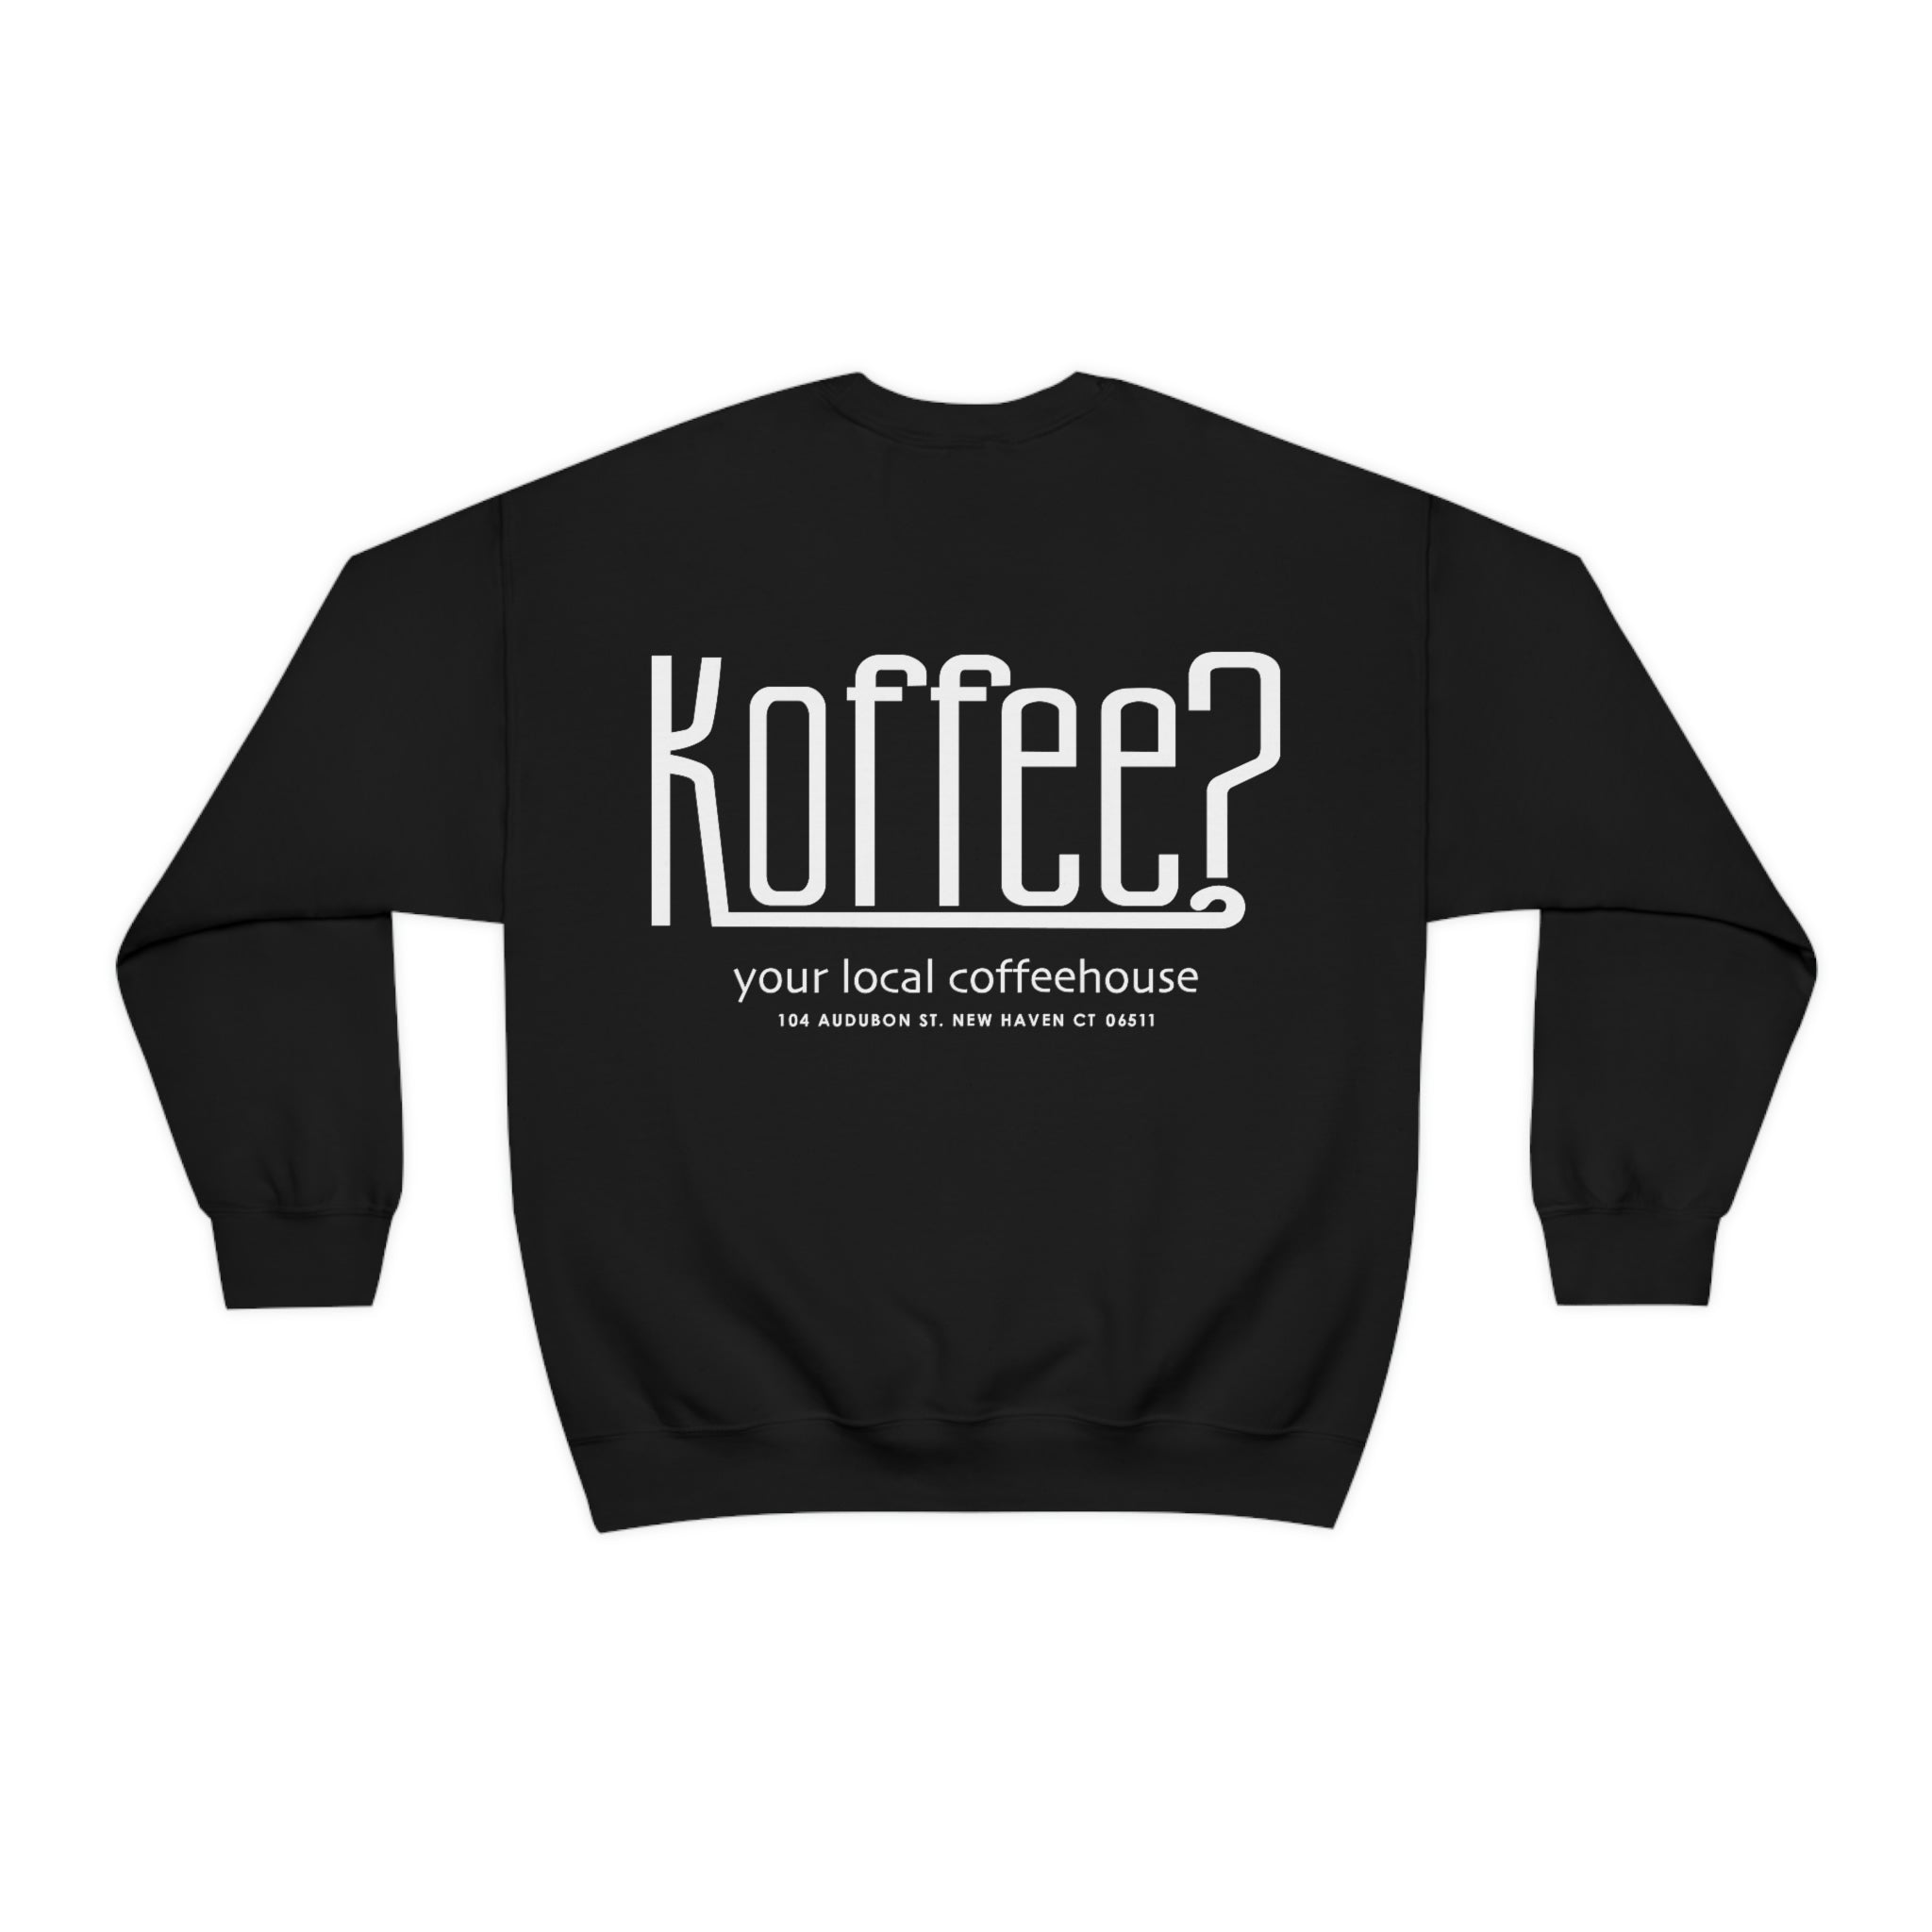 Koffee? Standard Sweatshirt in Black